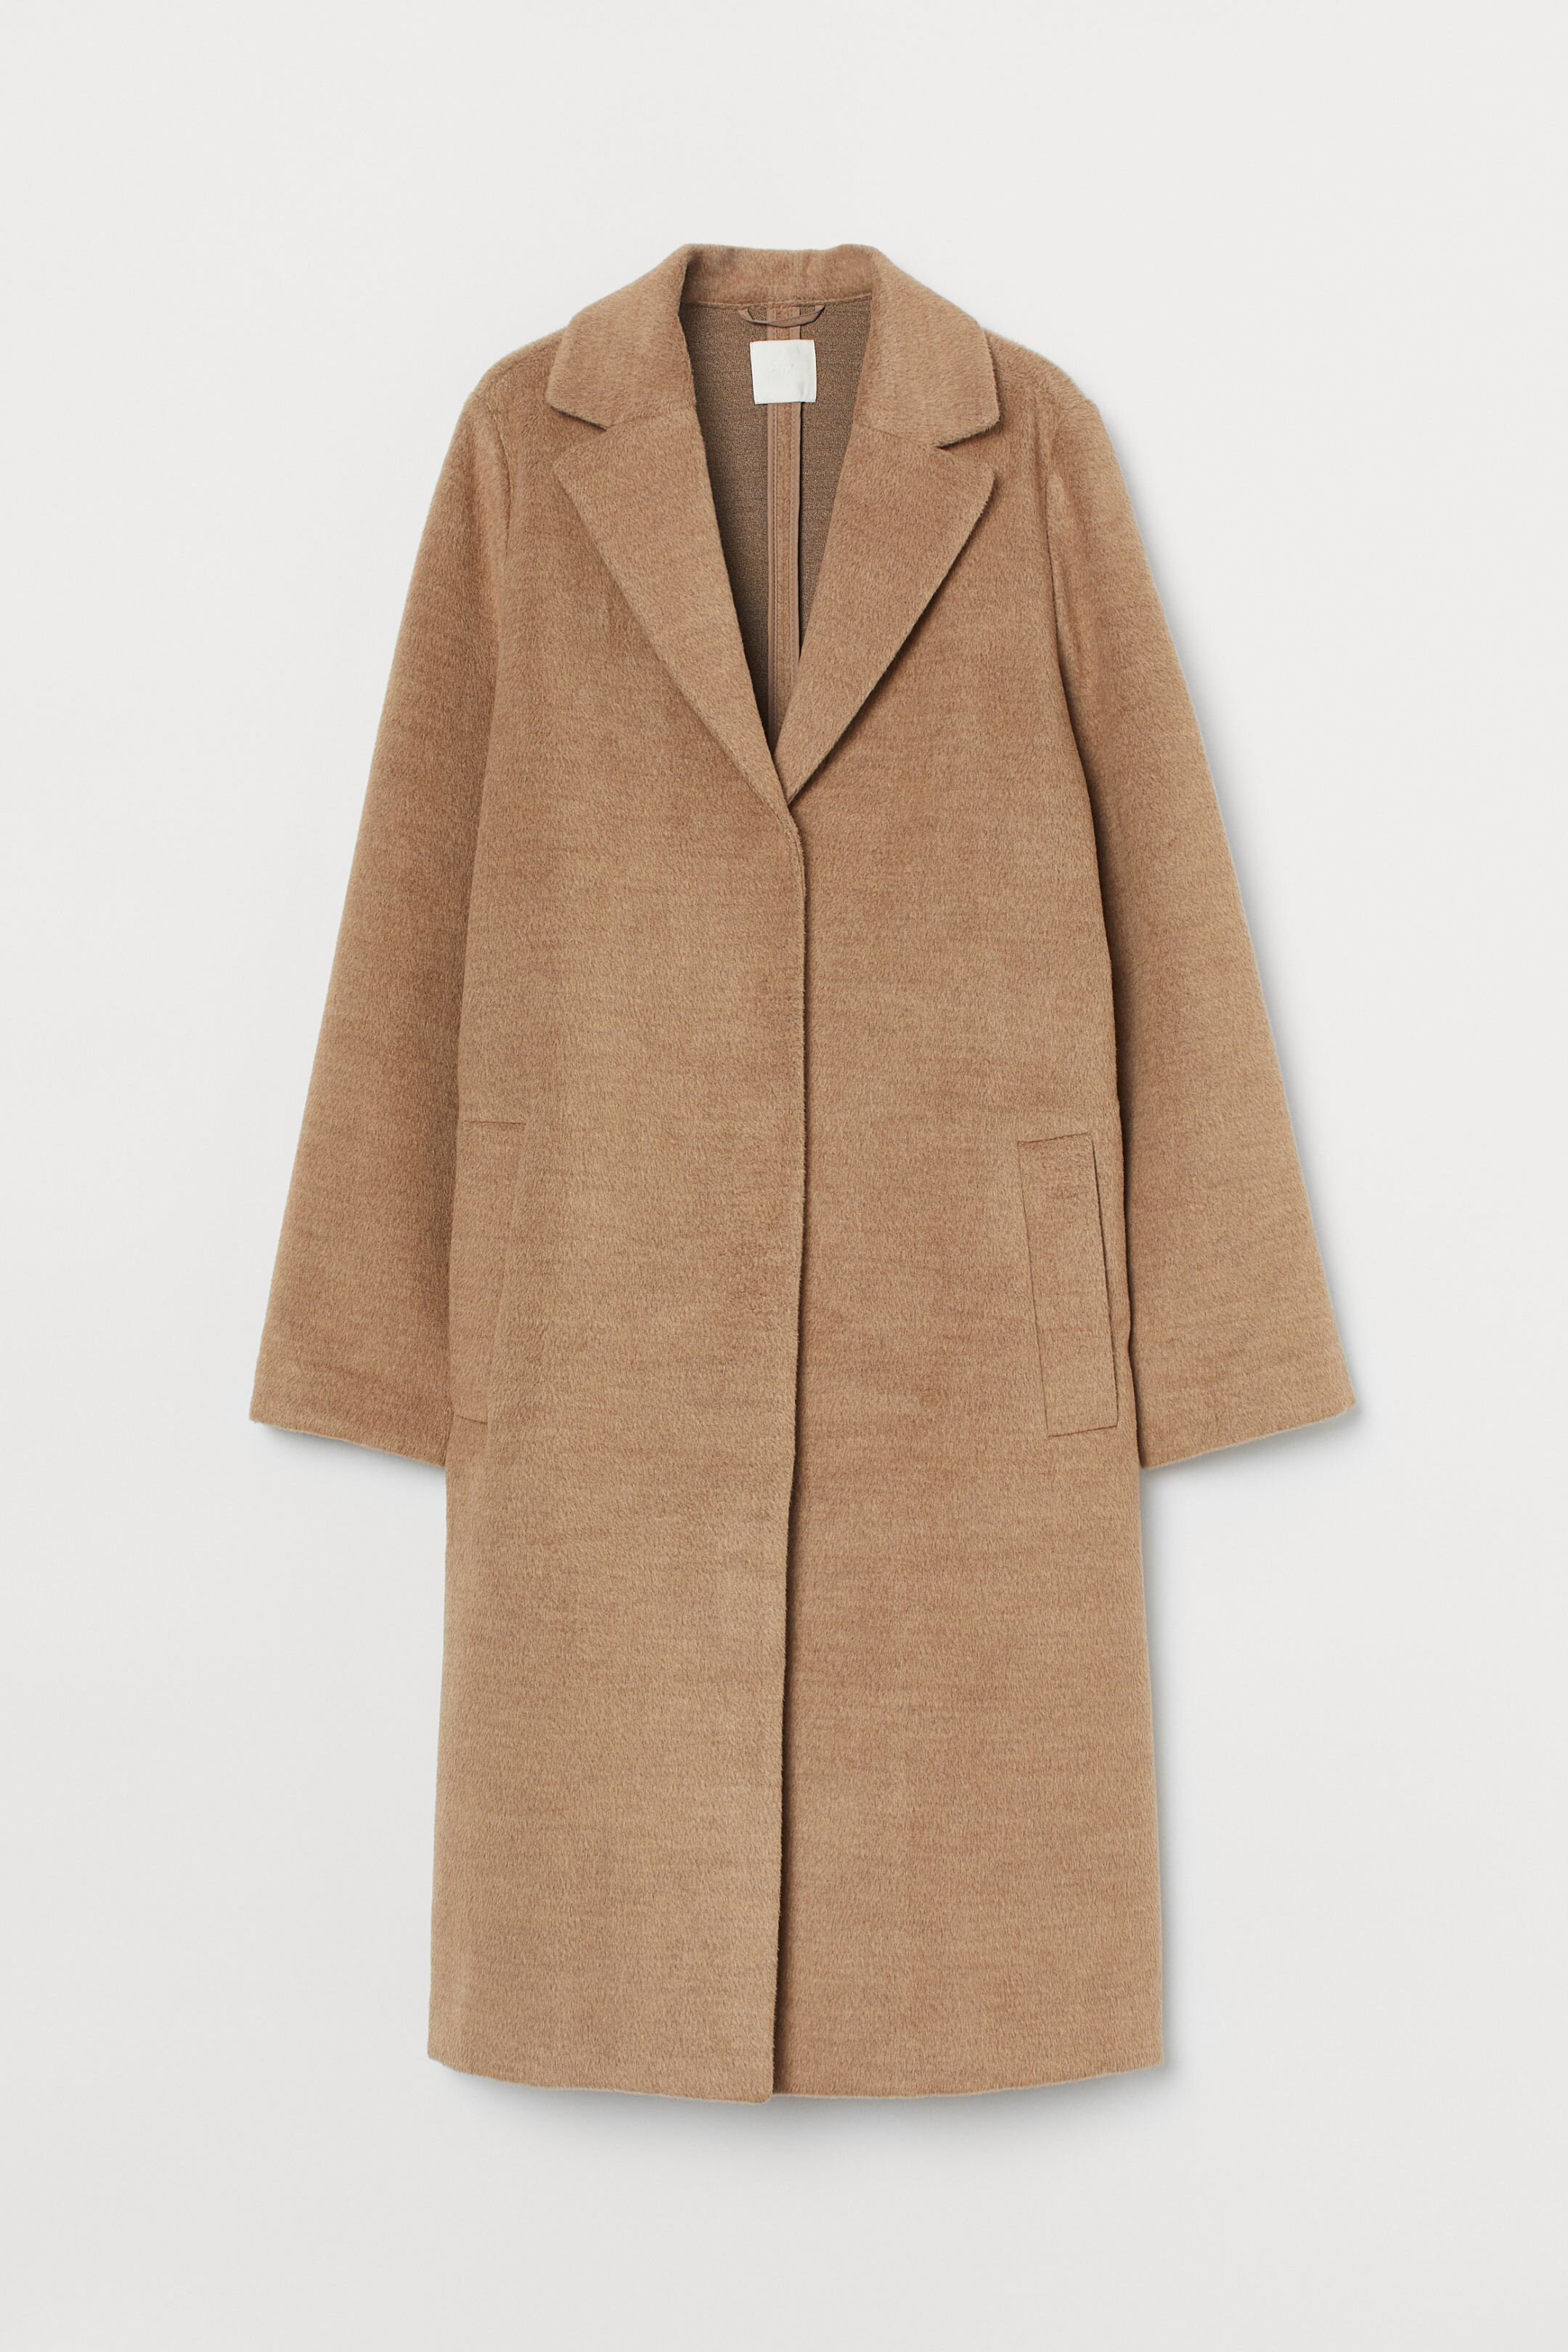 Coat, £39.99, H&amp;M